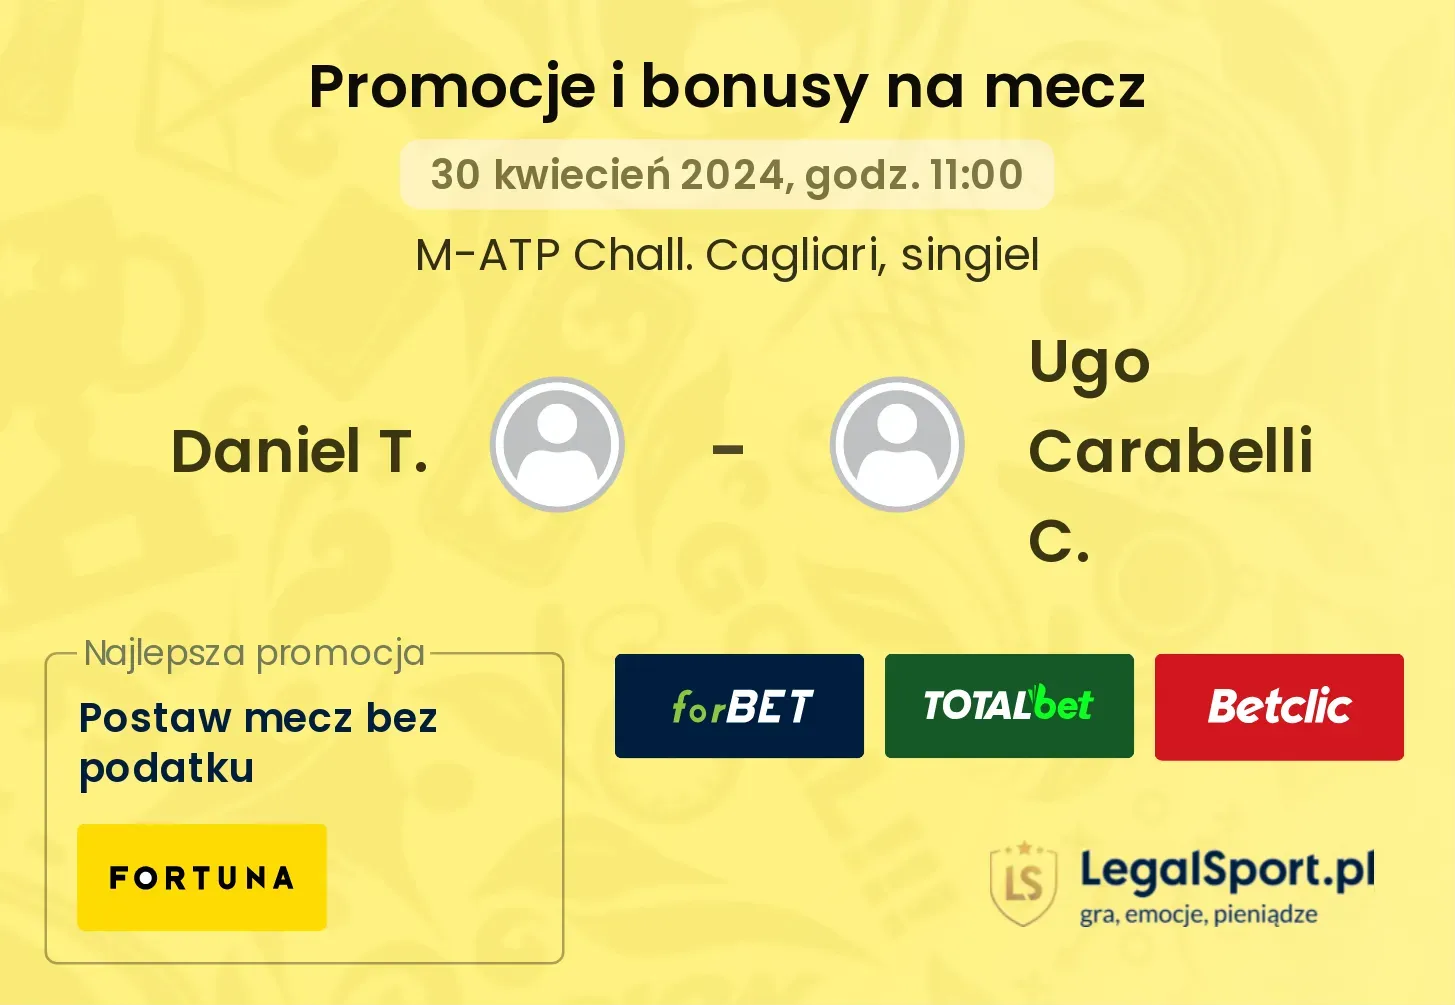 Daniel T. - Ugo Carabelli C. promocje bonusy na mecz